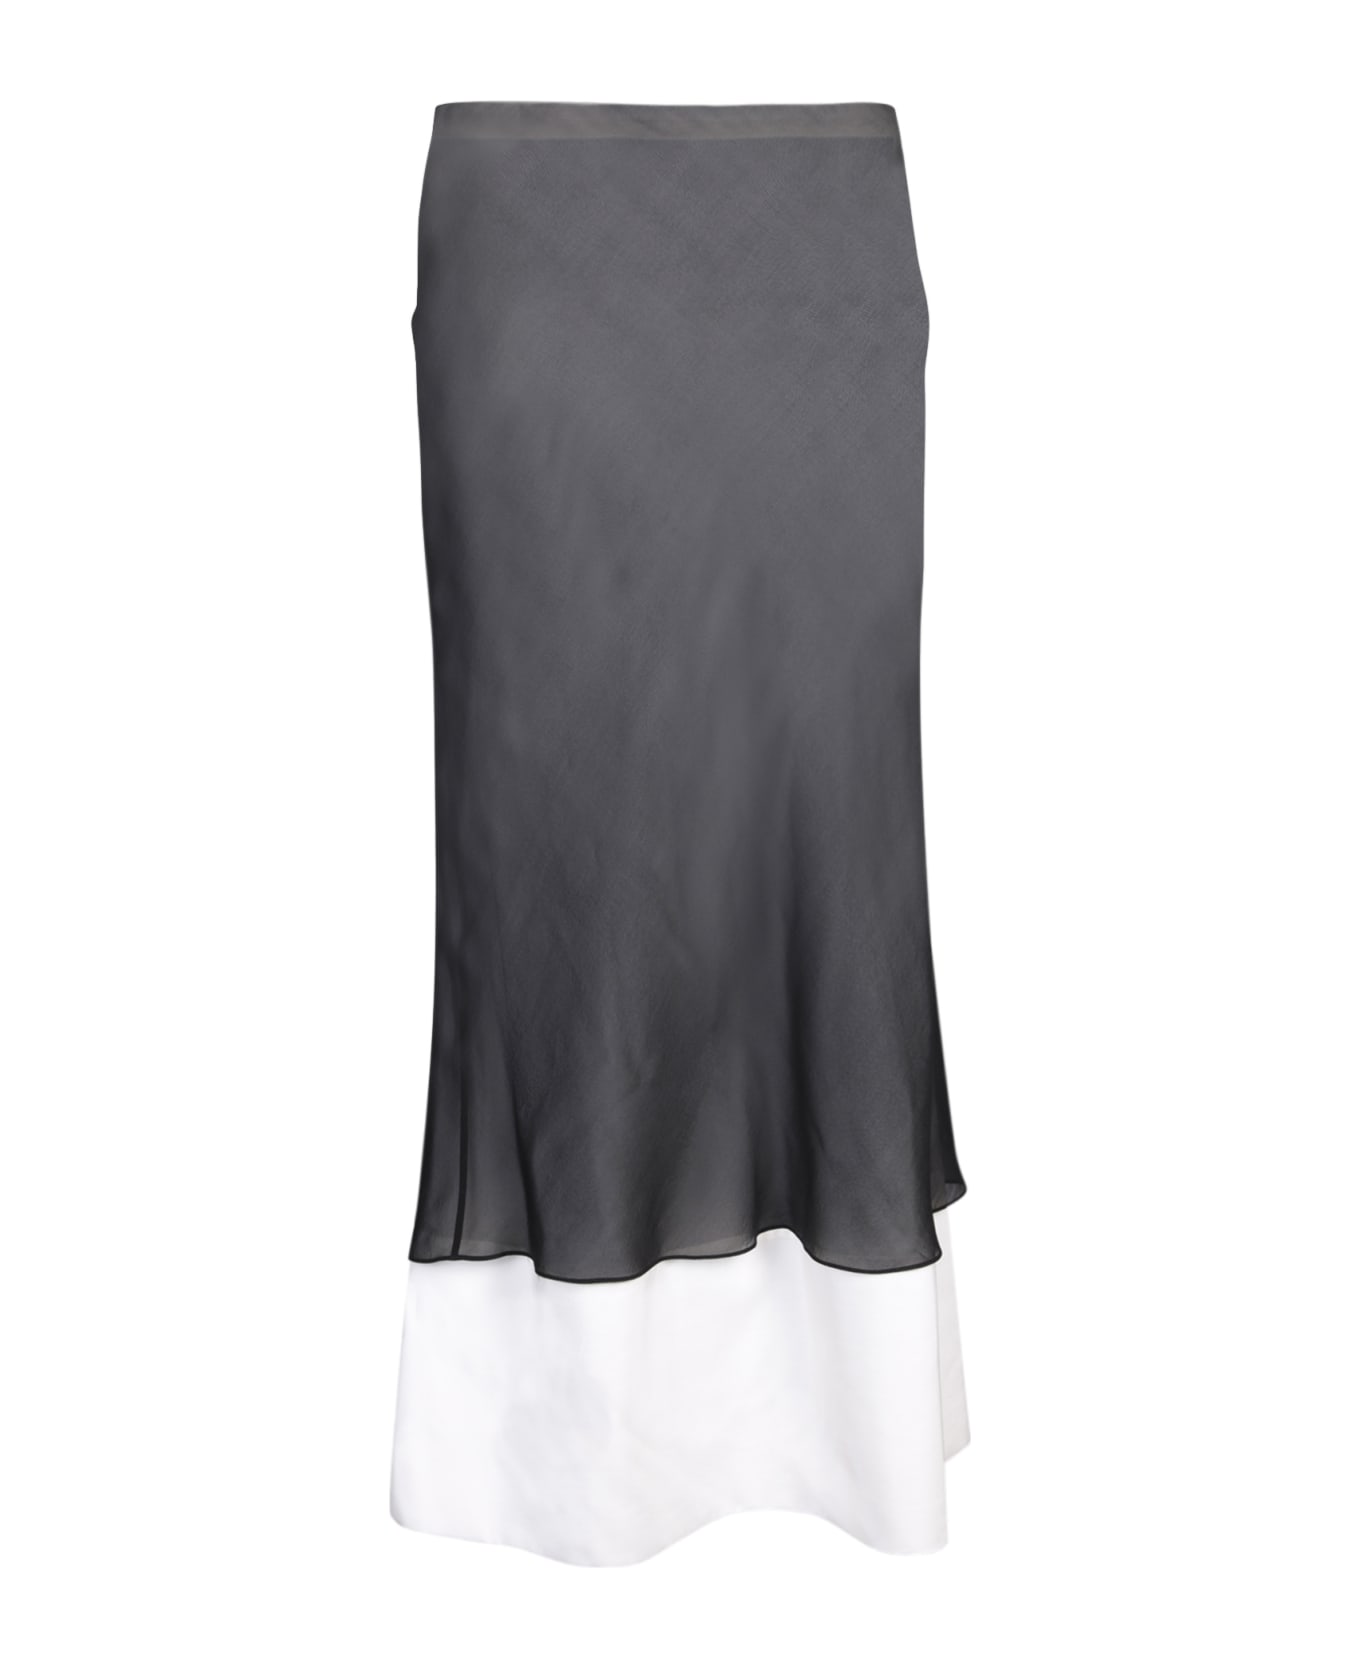 Quira Double Underskirt Skirt In Black/white - Black